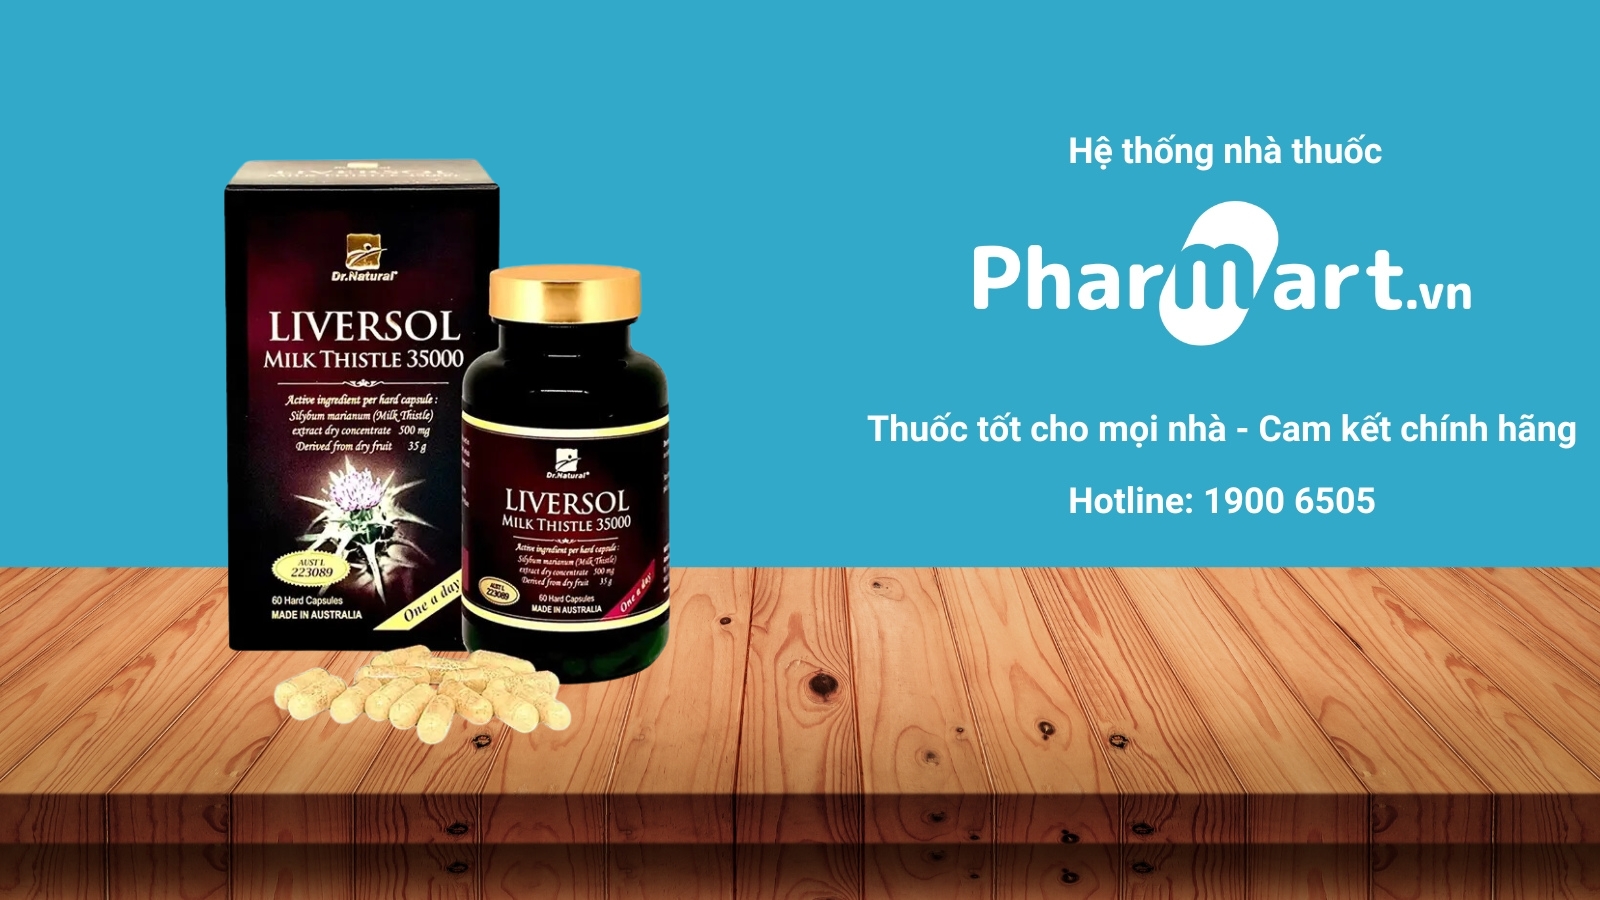 Mua ngay Viên uống LiverSol Milk Thistle 35000 chính hãng tại Pharmart.vn